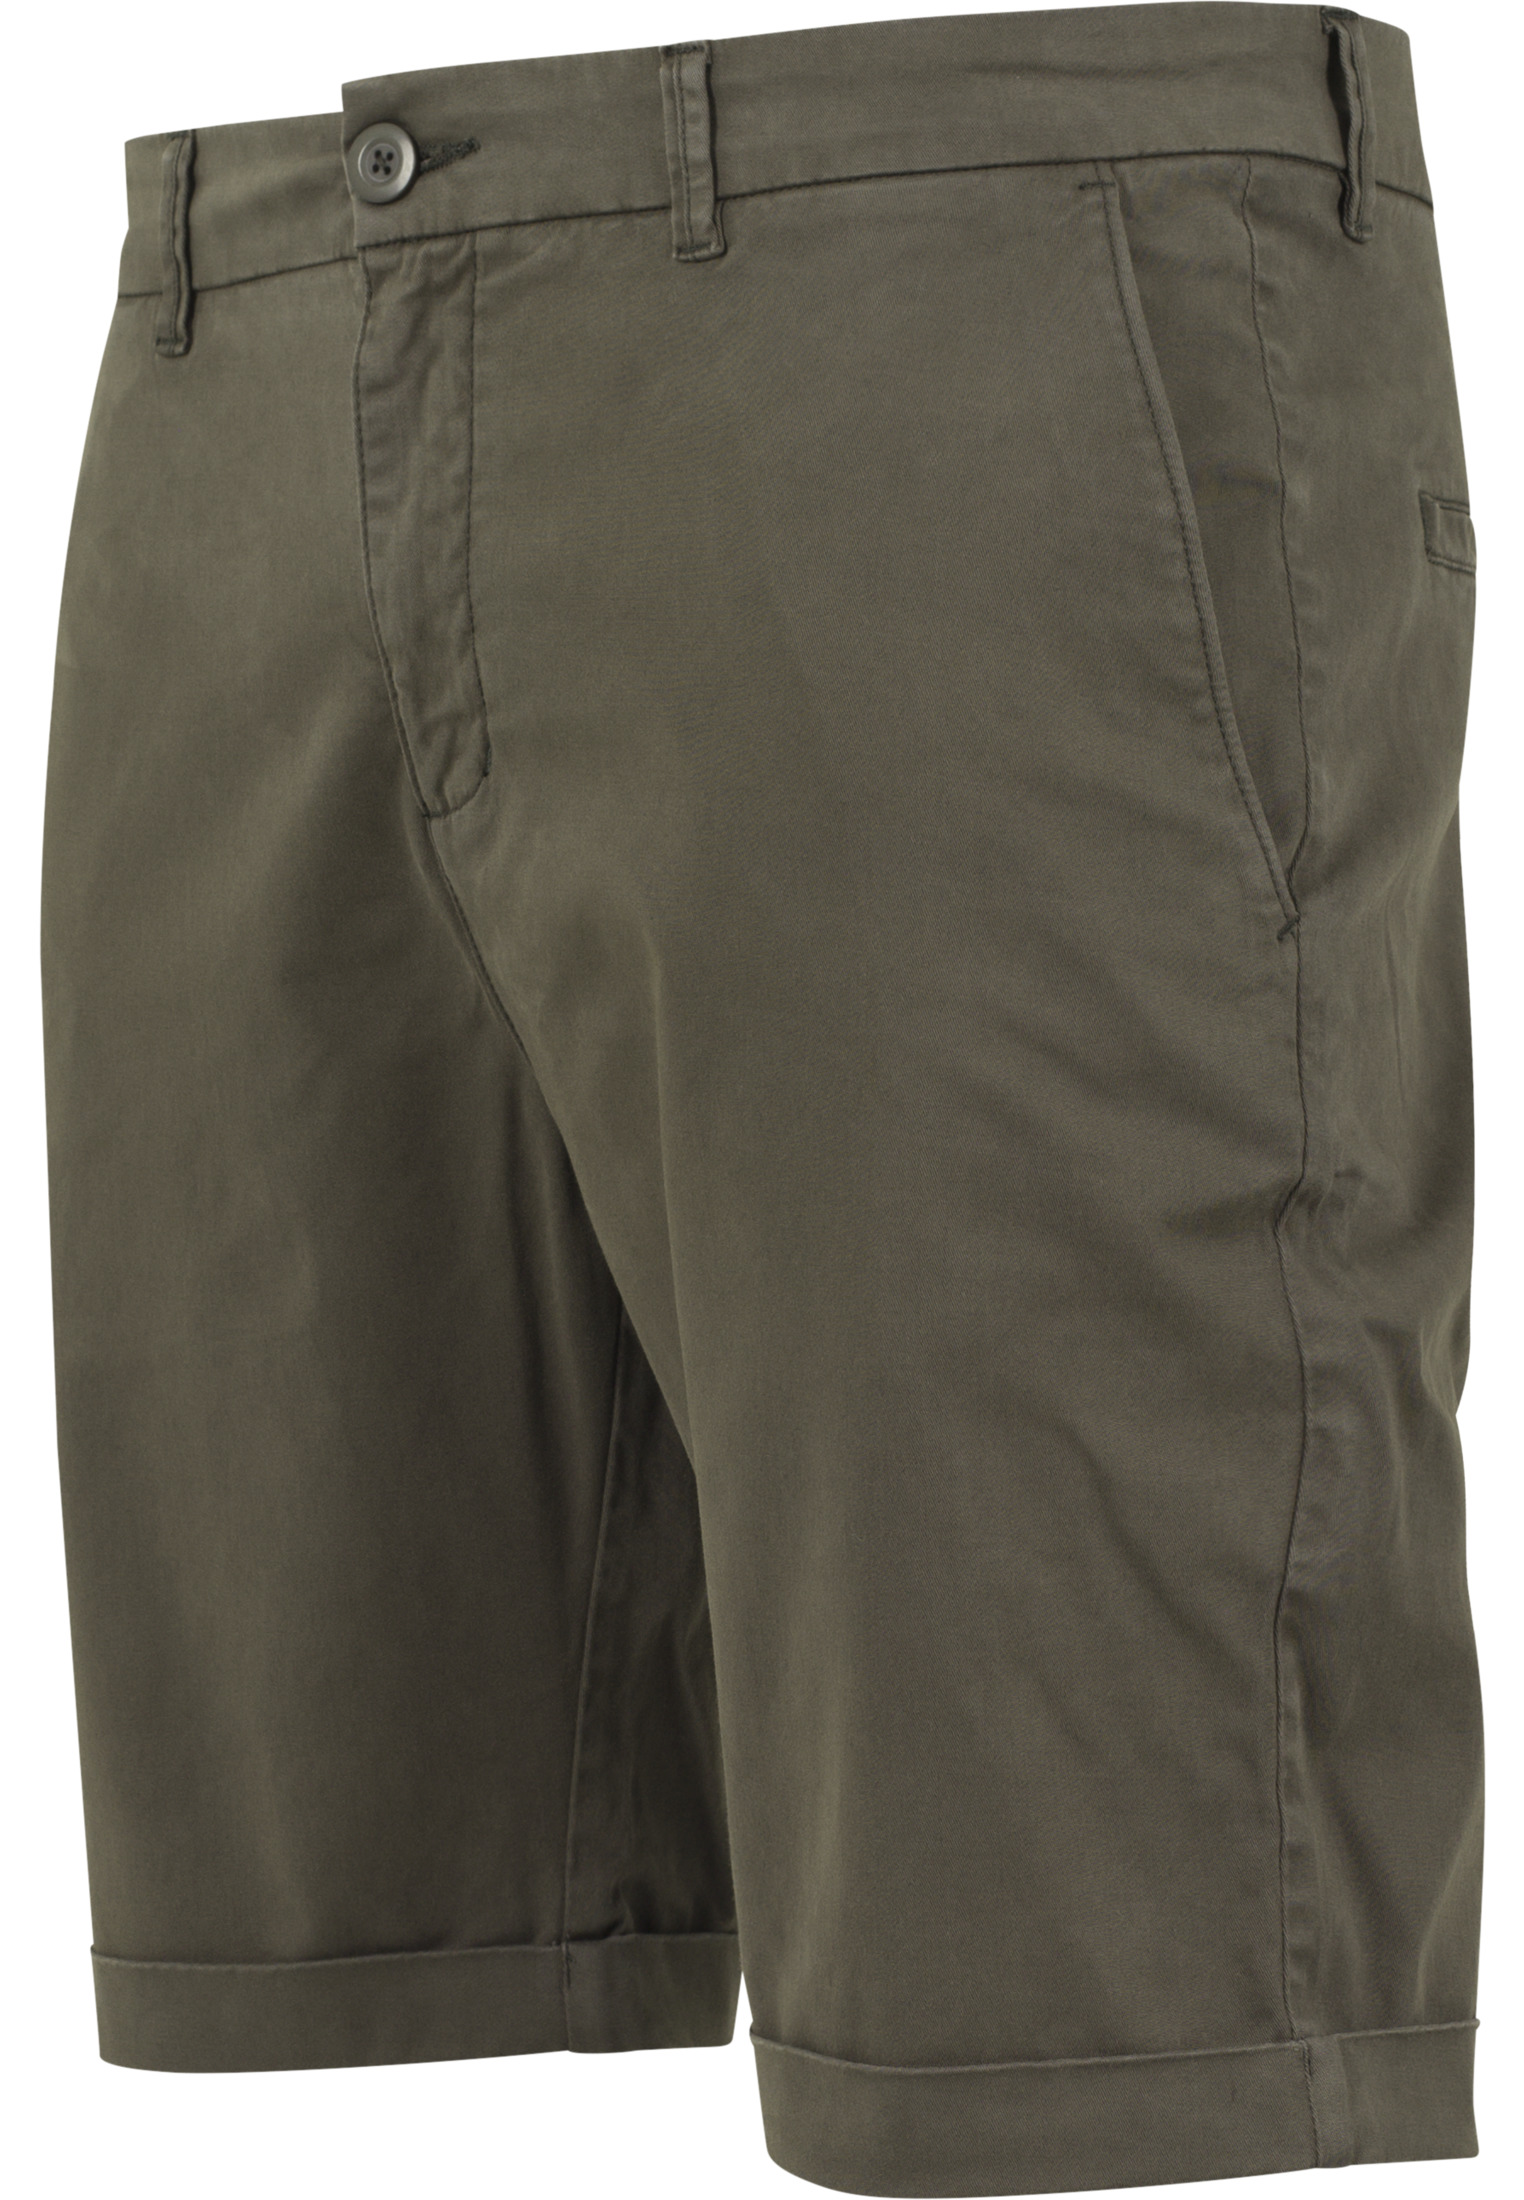 Cargo Hosen & Shorts Stretch Turnup Chino Shorts in Farbe dark olive